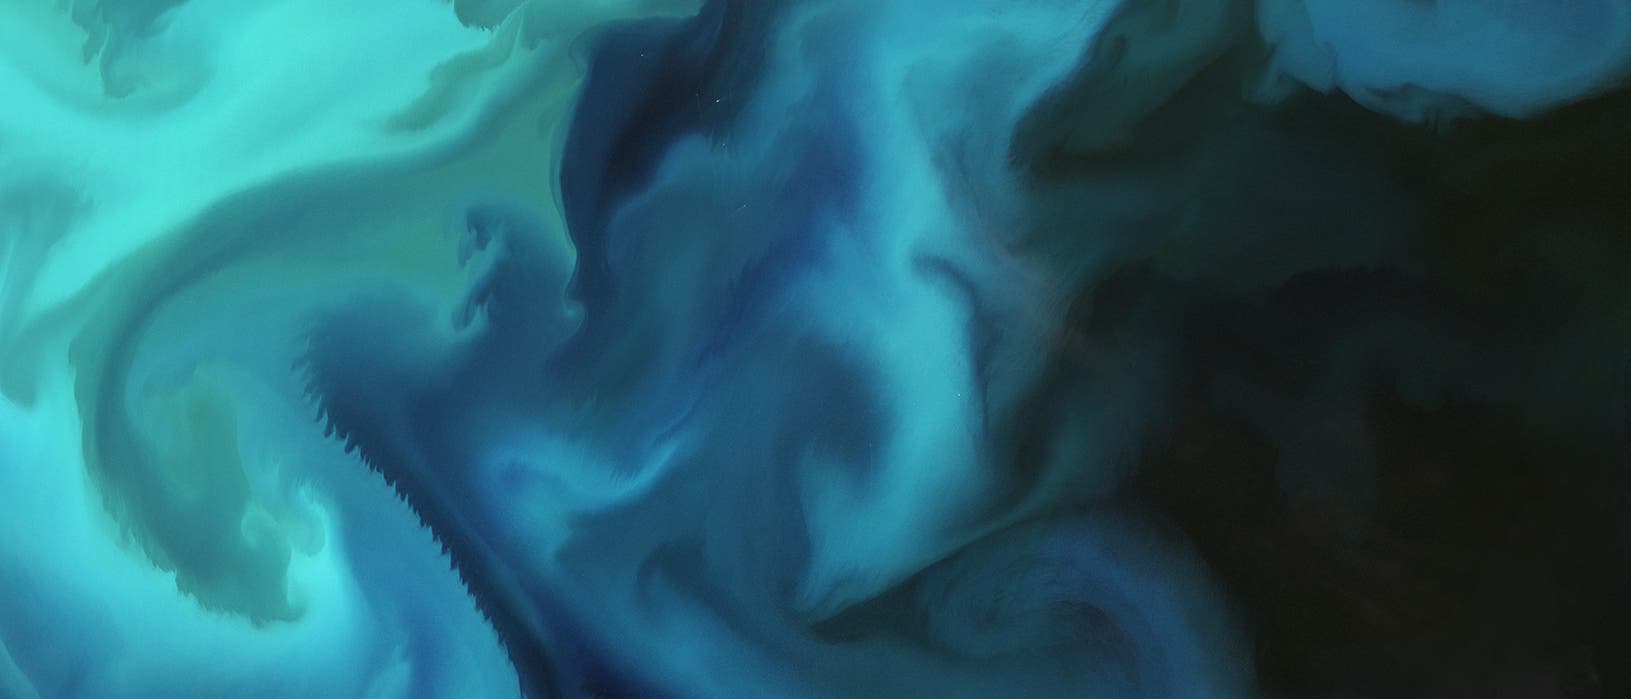 Verschiedene Grüntöne vermischen sich in diesem Satellitenbild des Ozeans